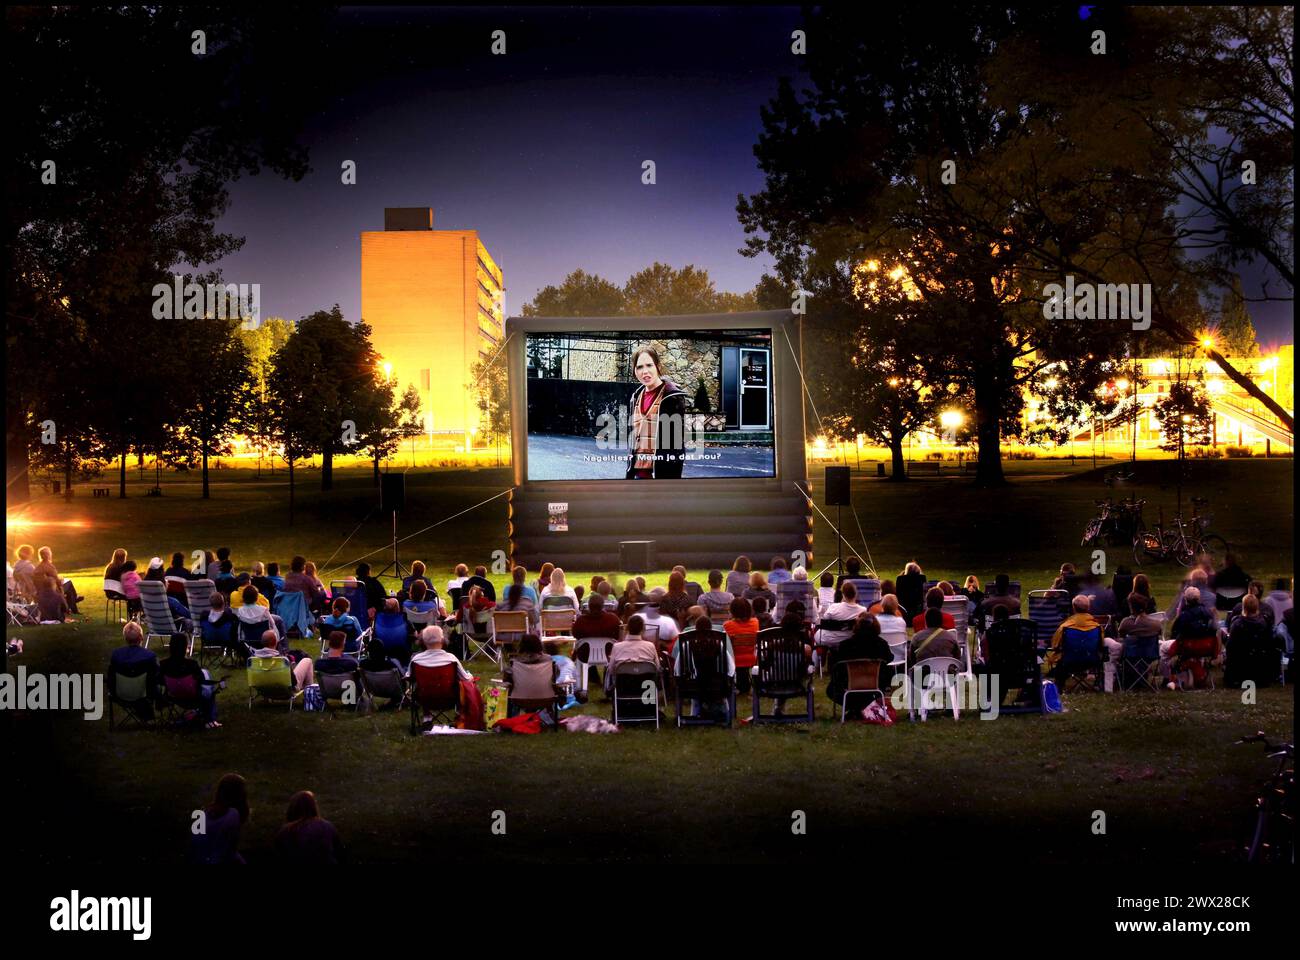 Les gens apprécient un film le soir dans un cinéma en plein air. Arnhem Holland. photographie vvbvanbree Banque D'Images